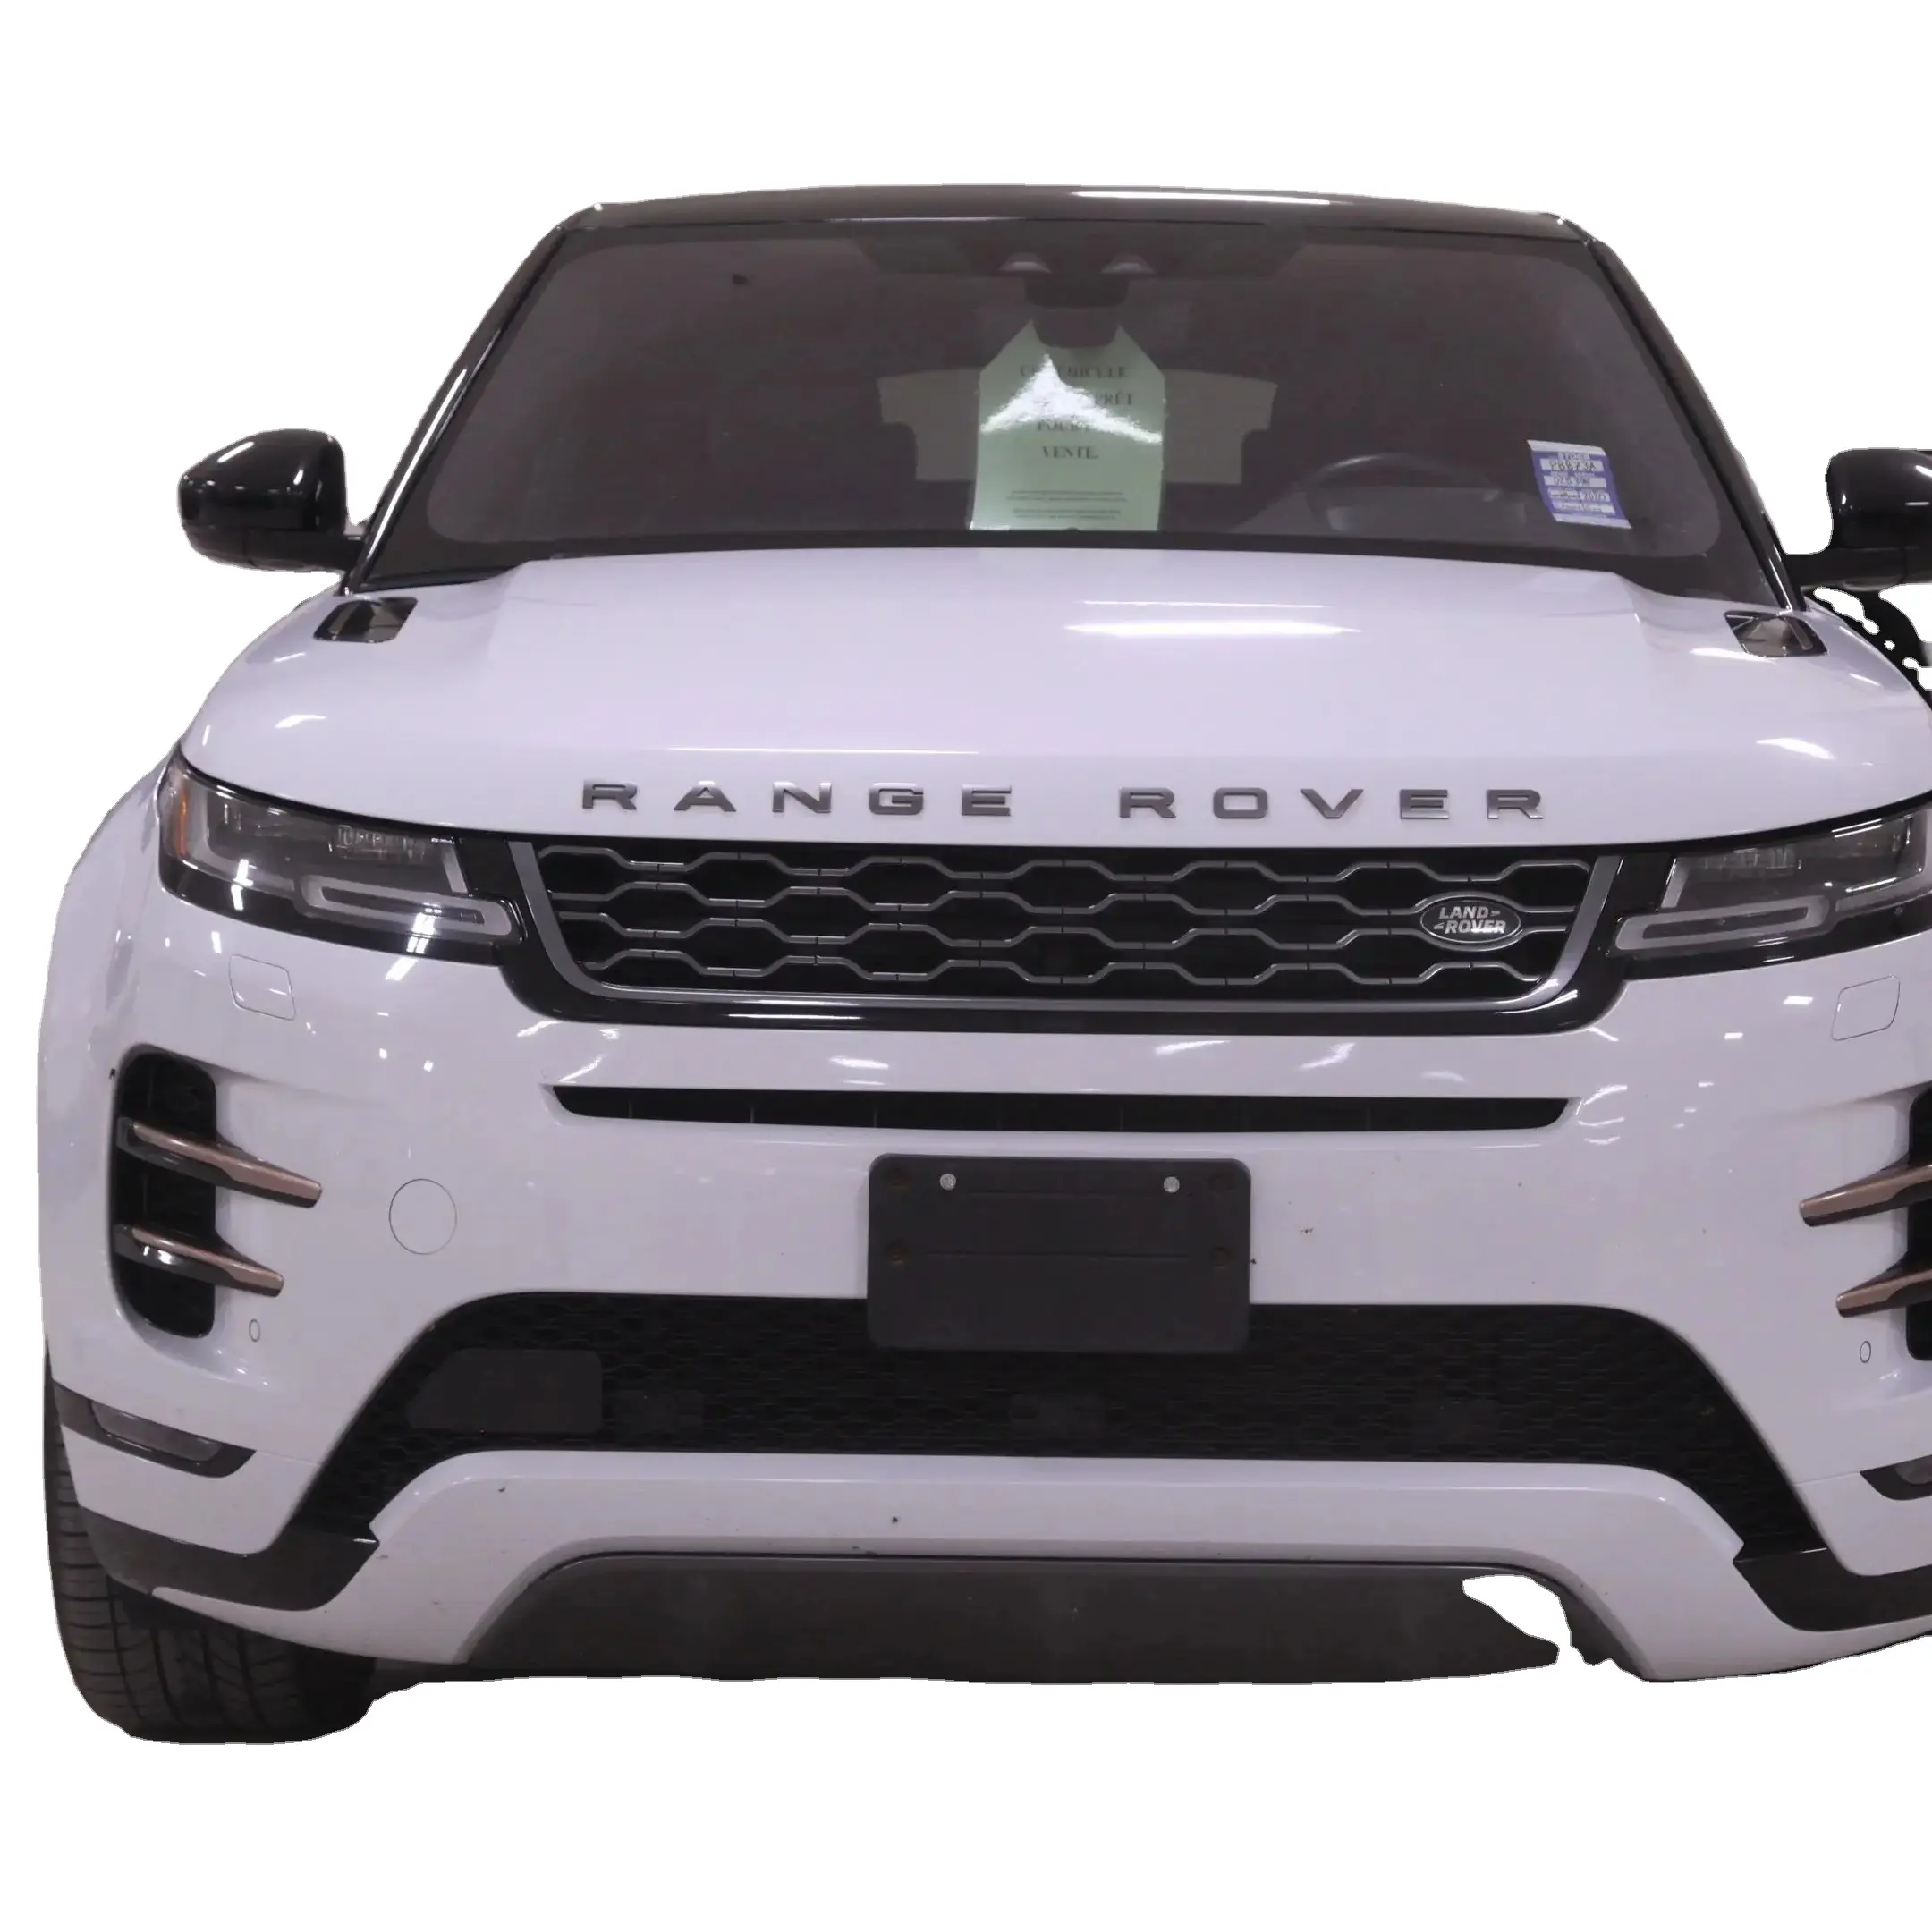 Calidad USADO Land Rover Range Rover Evoque volante a la izquierda mano derecha coches a la venta ahora